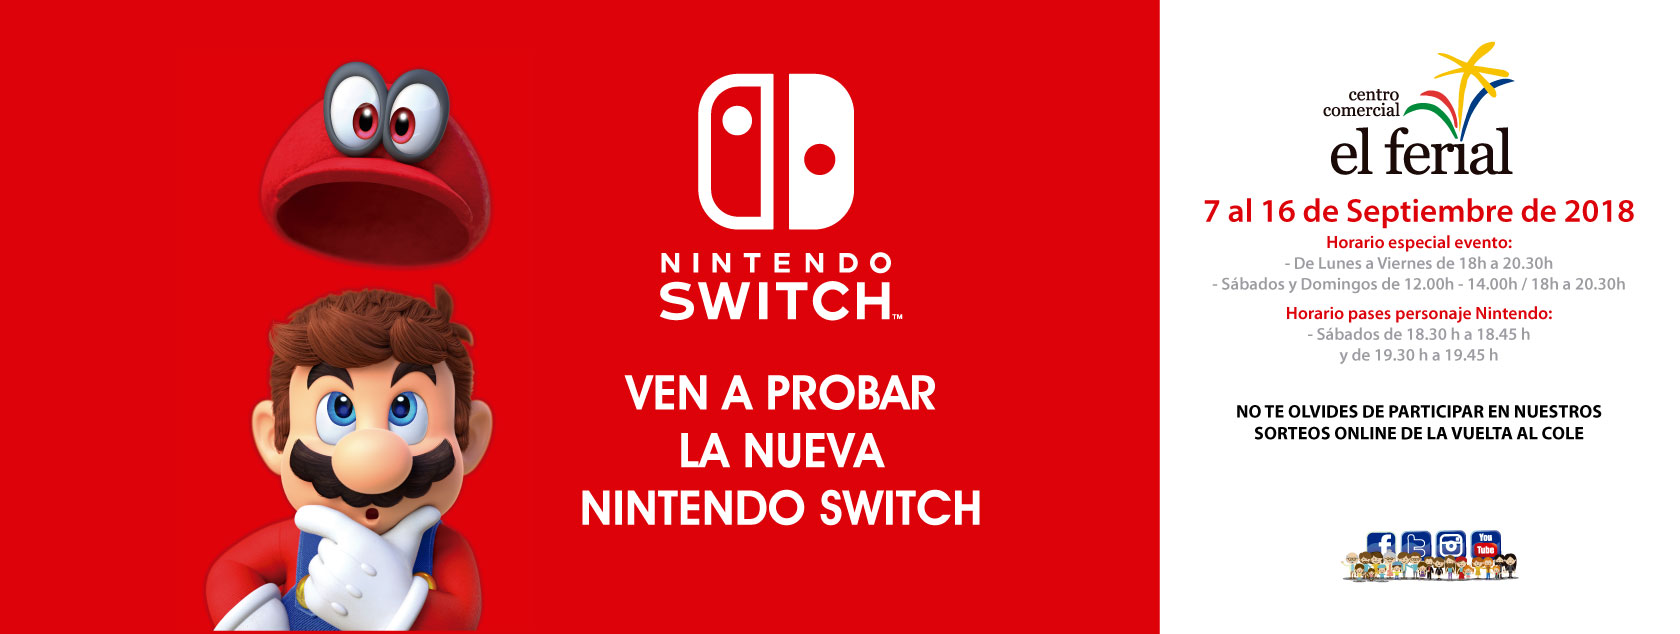 Ven a probar la nueva Nintendo Switch